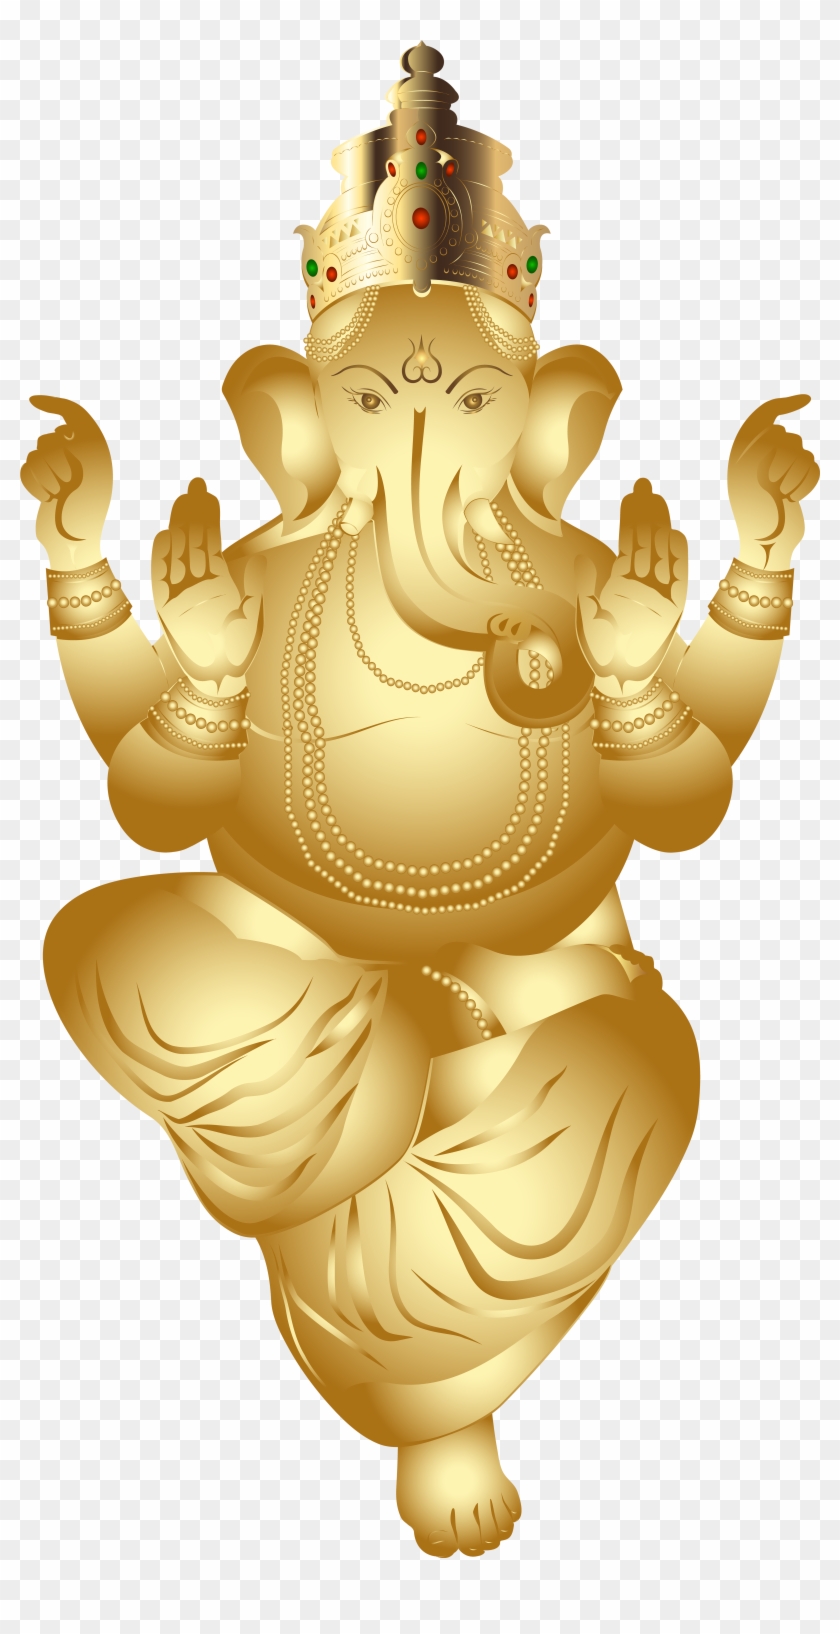 Ganesha Gold Png Clip Art Image - Gold Ganesh Transparent Png #117412